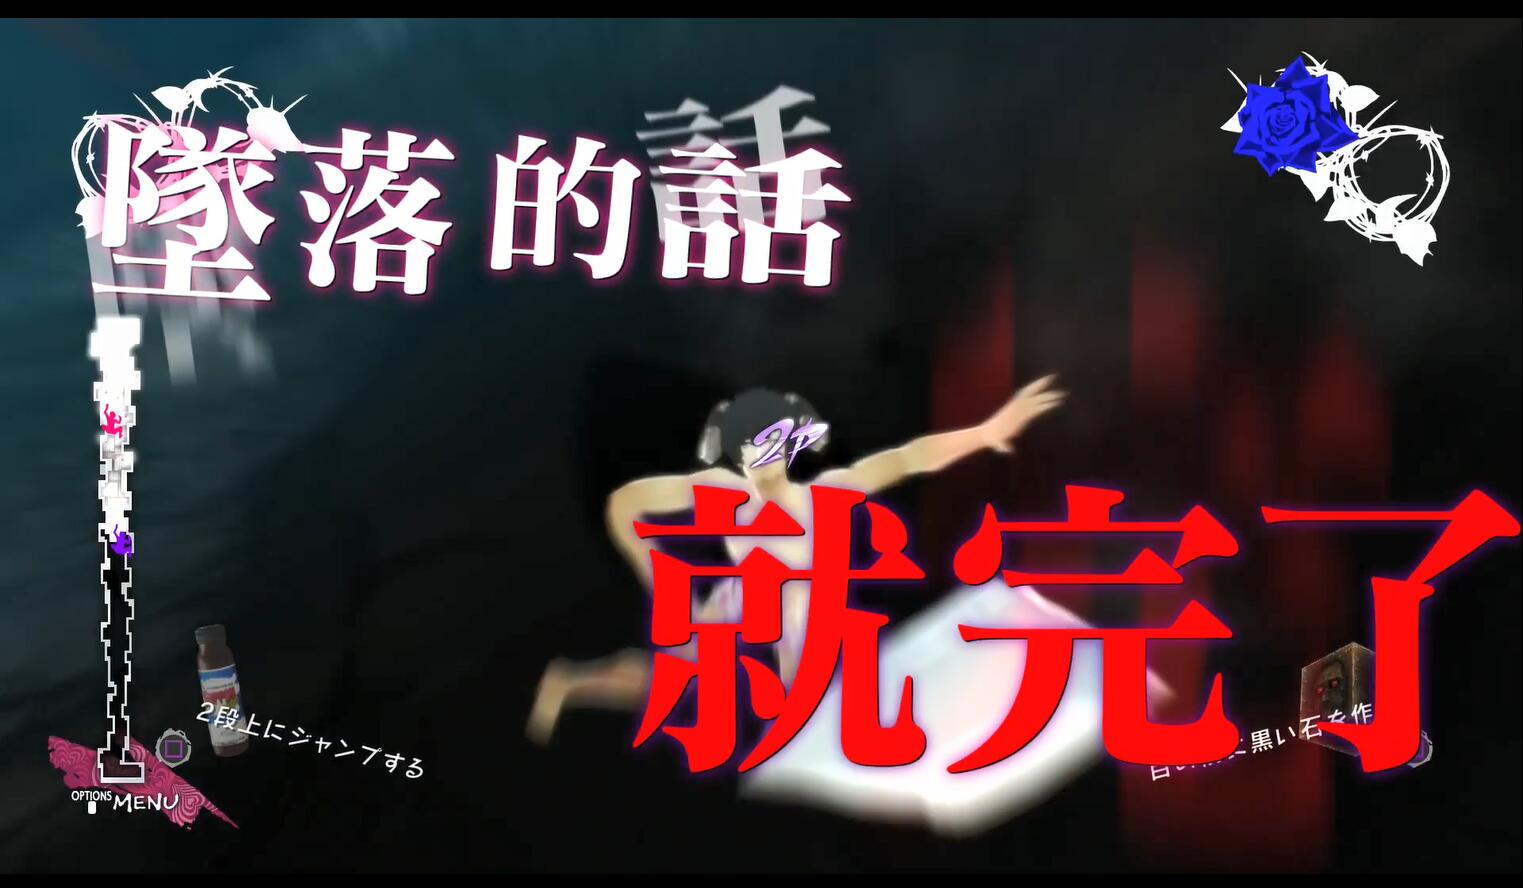 就在5小时前，世嘉亚洲在Youtube上发布了《凯瑟琳：玉体横陈》的官方中文宣传影片，在长达3分半的宣传片中介绍了游戏的玩法、人物、新模式以及之前提到过的预购特典内容还有P5联动内容等.